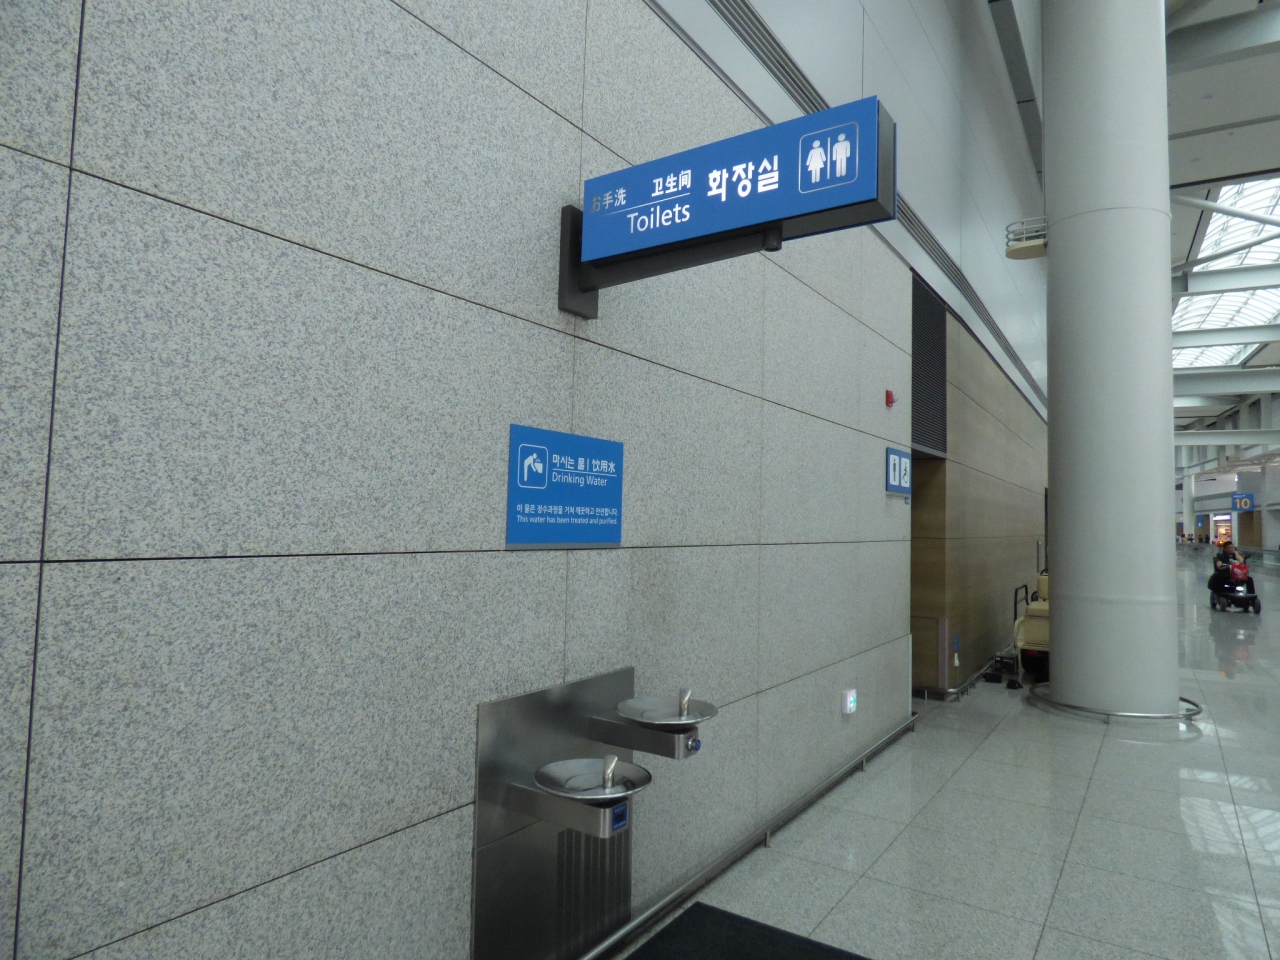 仁川 トイレ (韓国) 旅行のクチコミサイト フォートラベル